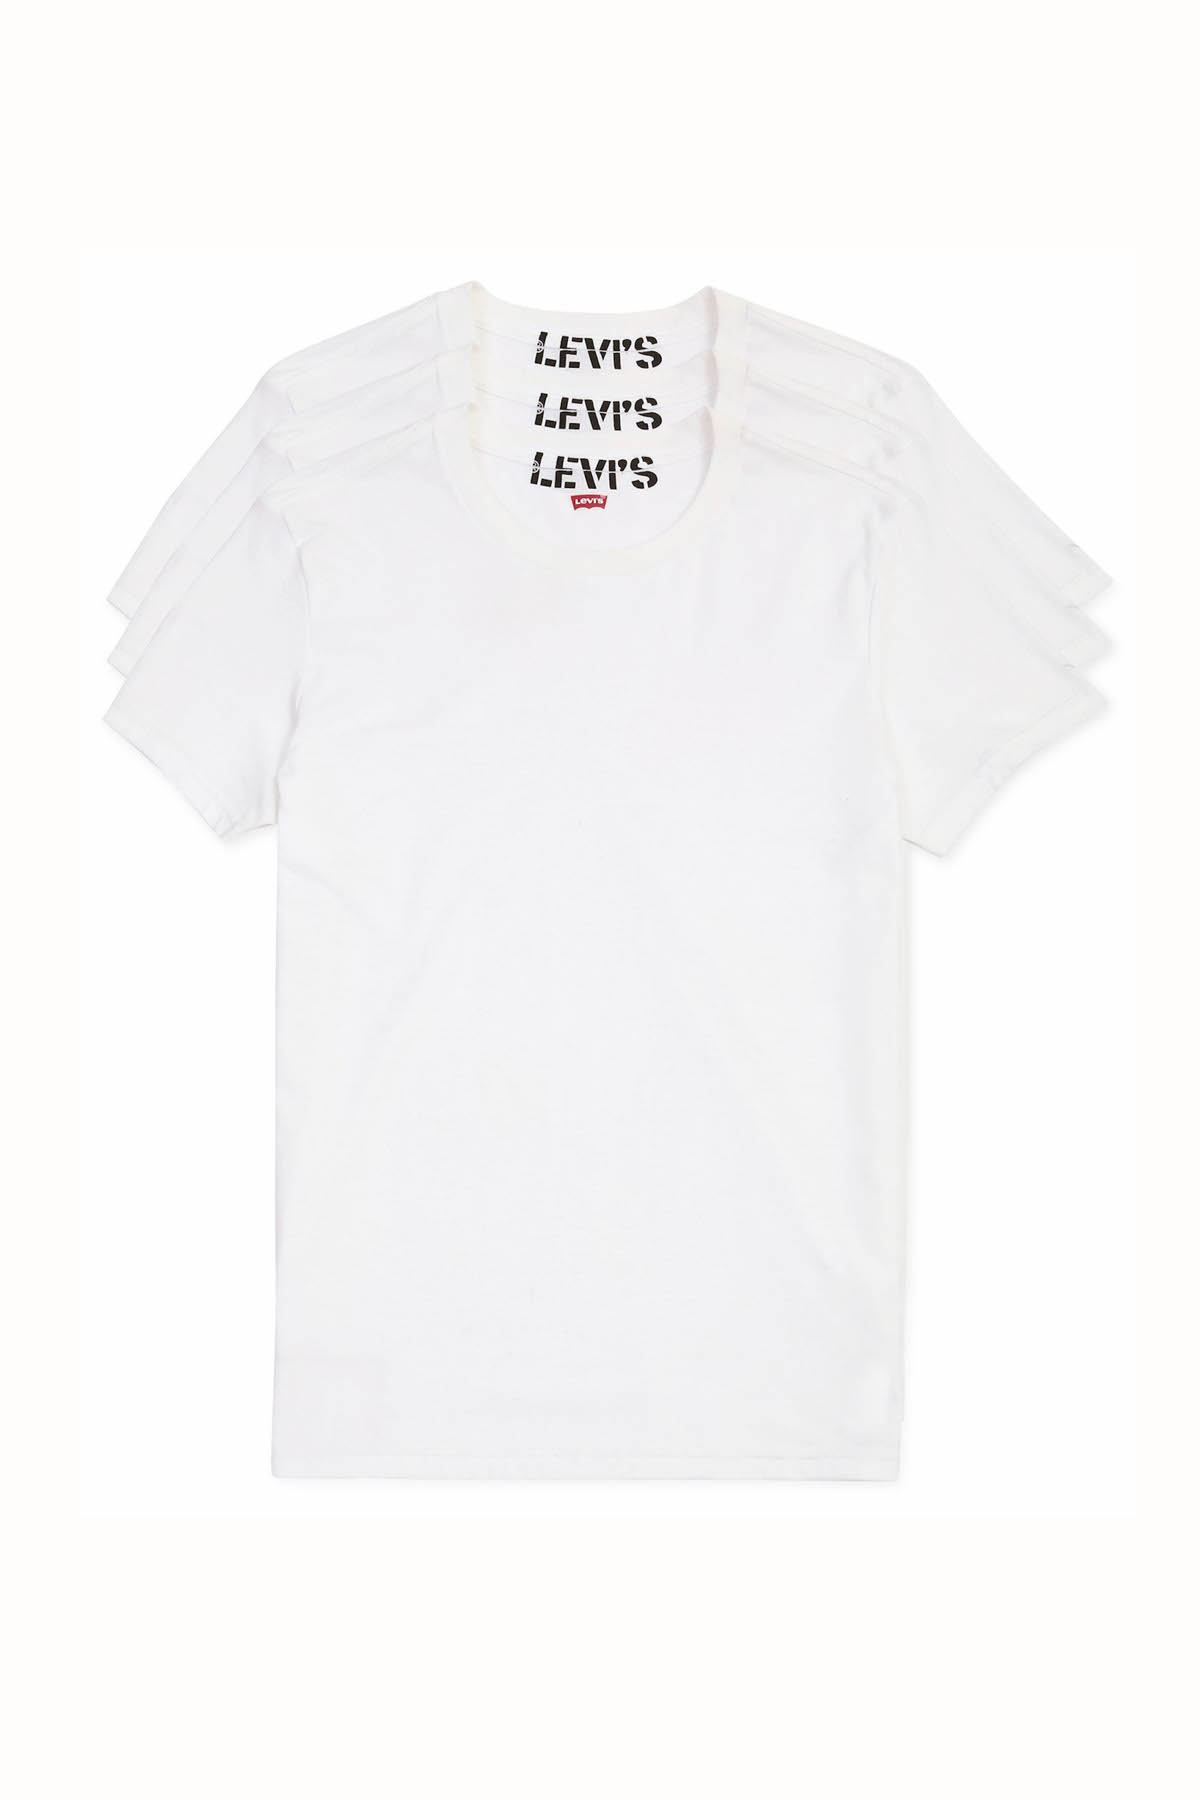 Levi's White 100 Series Undershirt 3-Pack